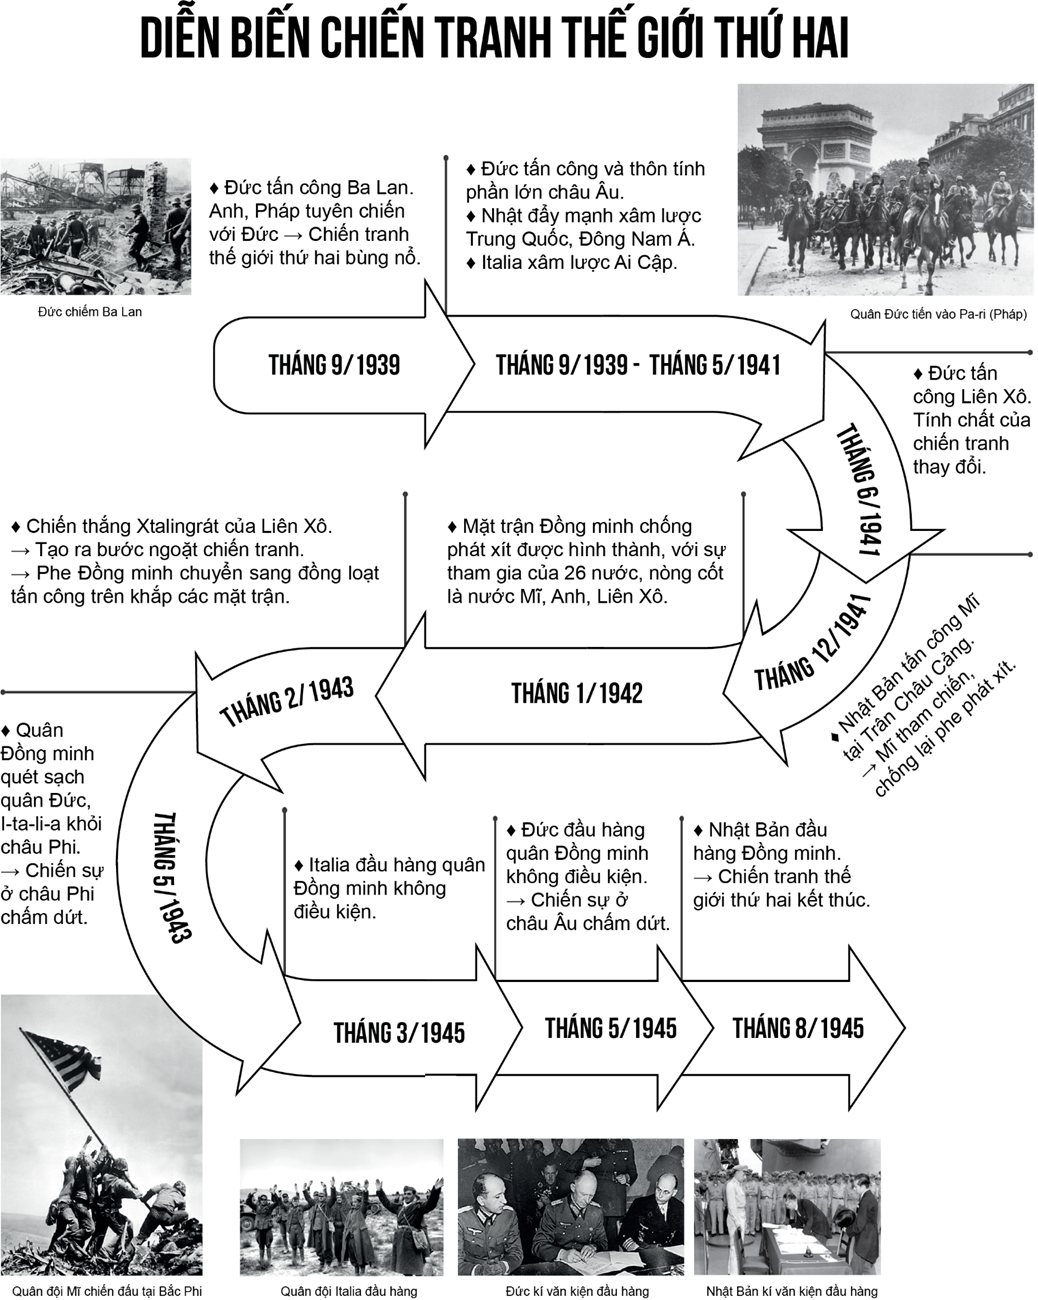 Vẽ trục thời gian thể hiện những sự kiện chính của Chiến tranh thế giới thứ hai (1939-1945). (ảnh 1)